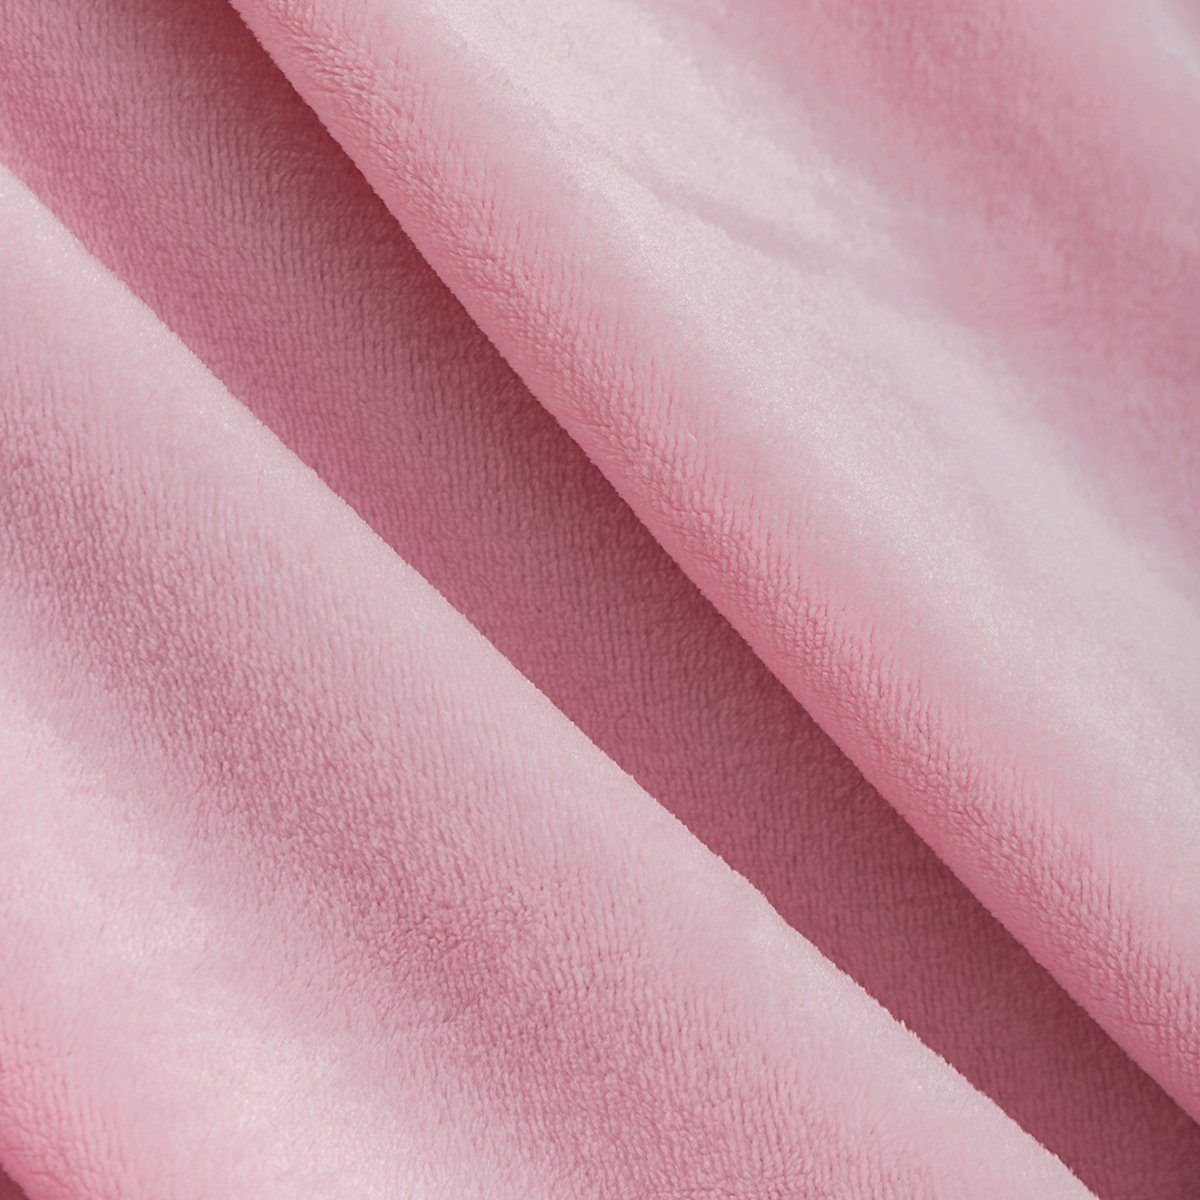 Wohndecke Flanell Decke Pompoms Kuscheldecke, weich warm Rose Decken für Wohndecke flauschig, Couch Fleecedecke Sofa und BTTO